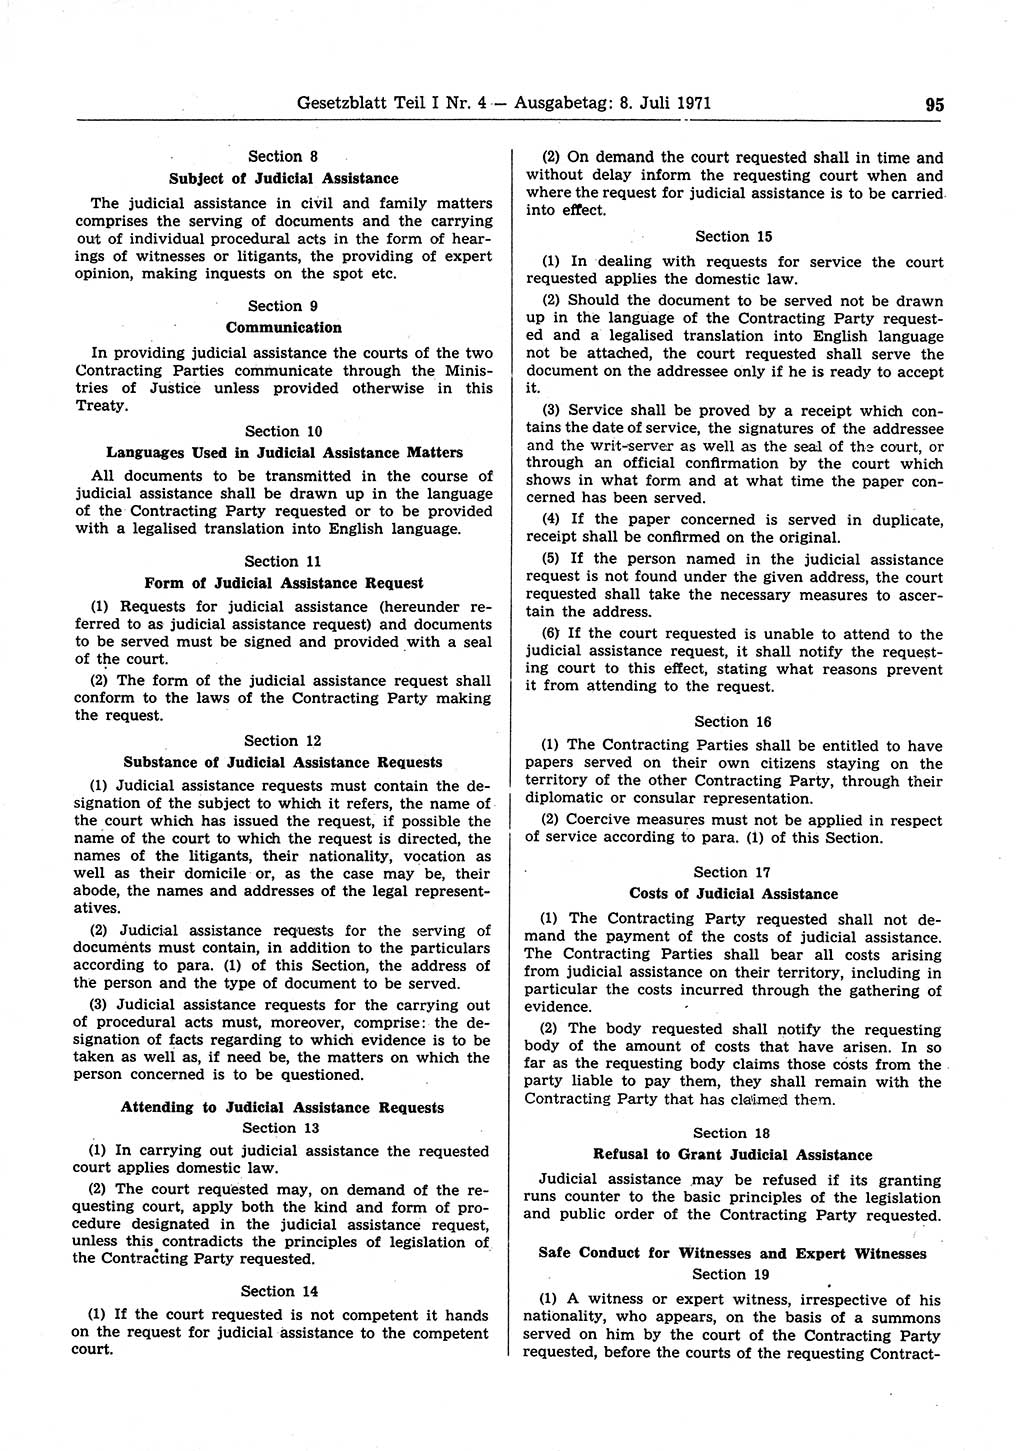 Gesetzblatt (GBl.) der Deutschen Demokratischen Republik (DDR) Teil Ⅰ 1971, Seite 95 (GBl. DDR Ⅰ 1971, S. 95)